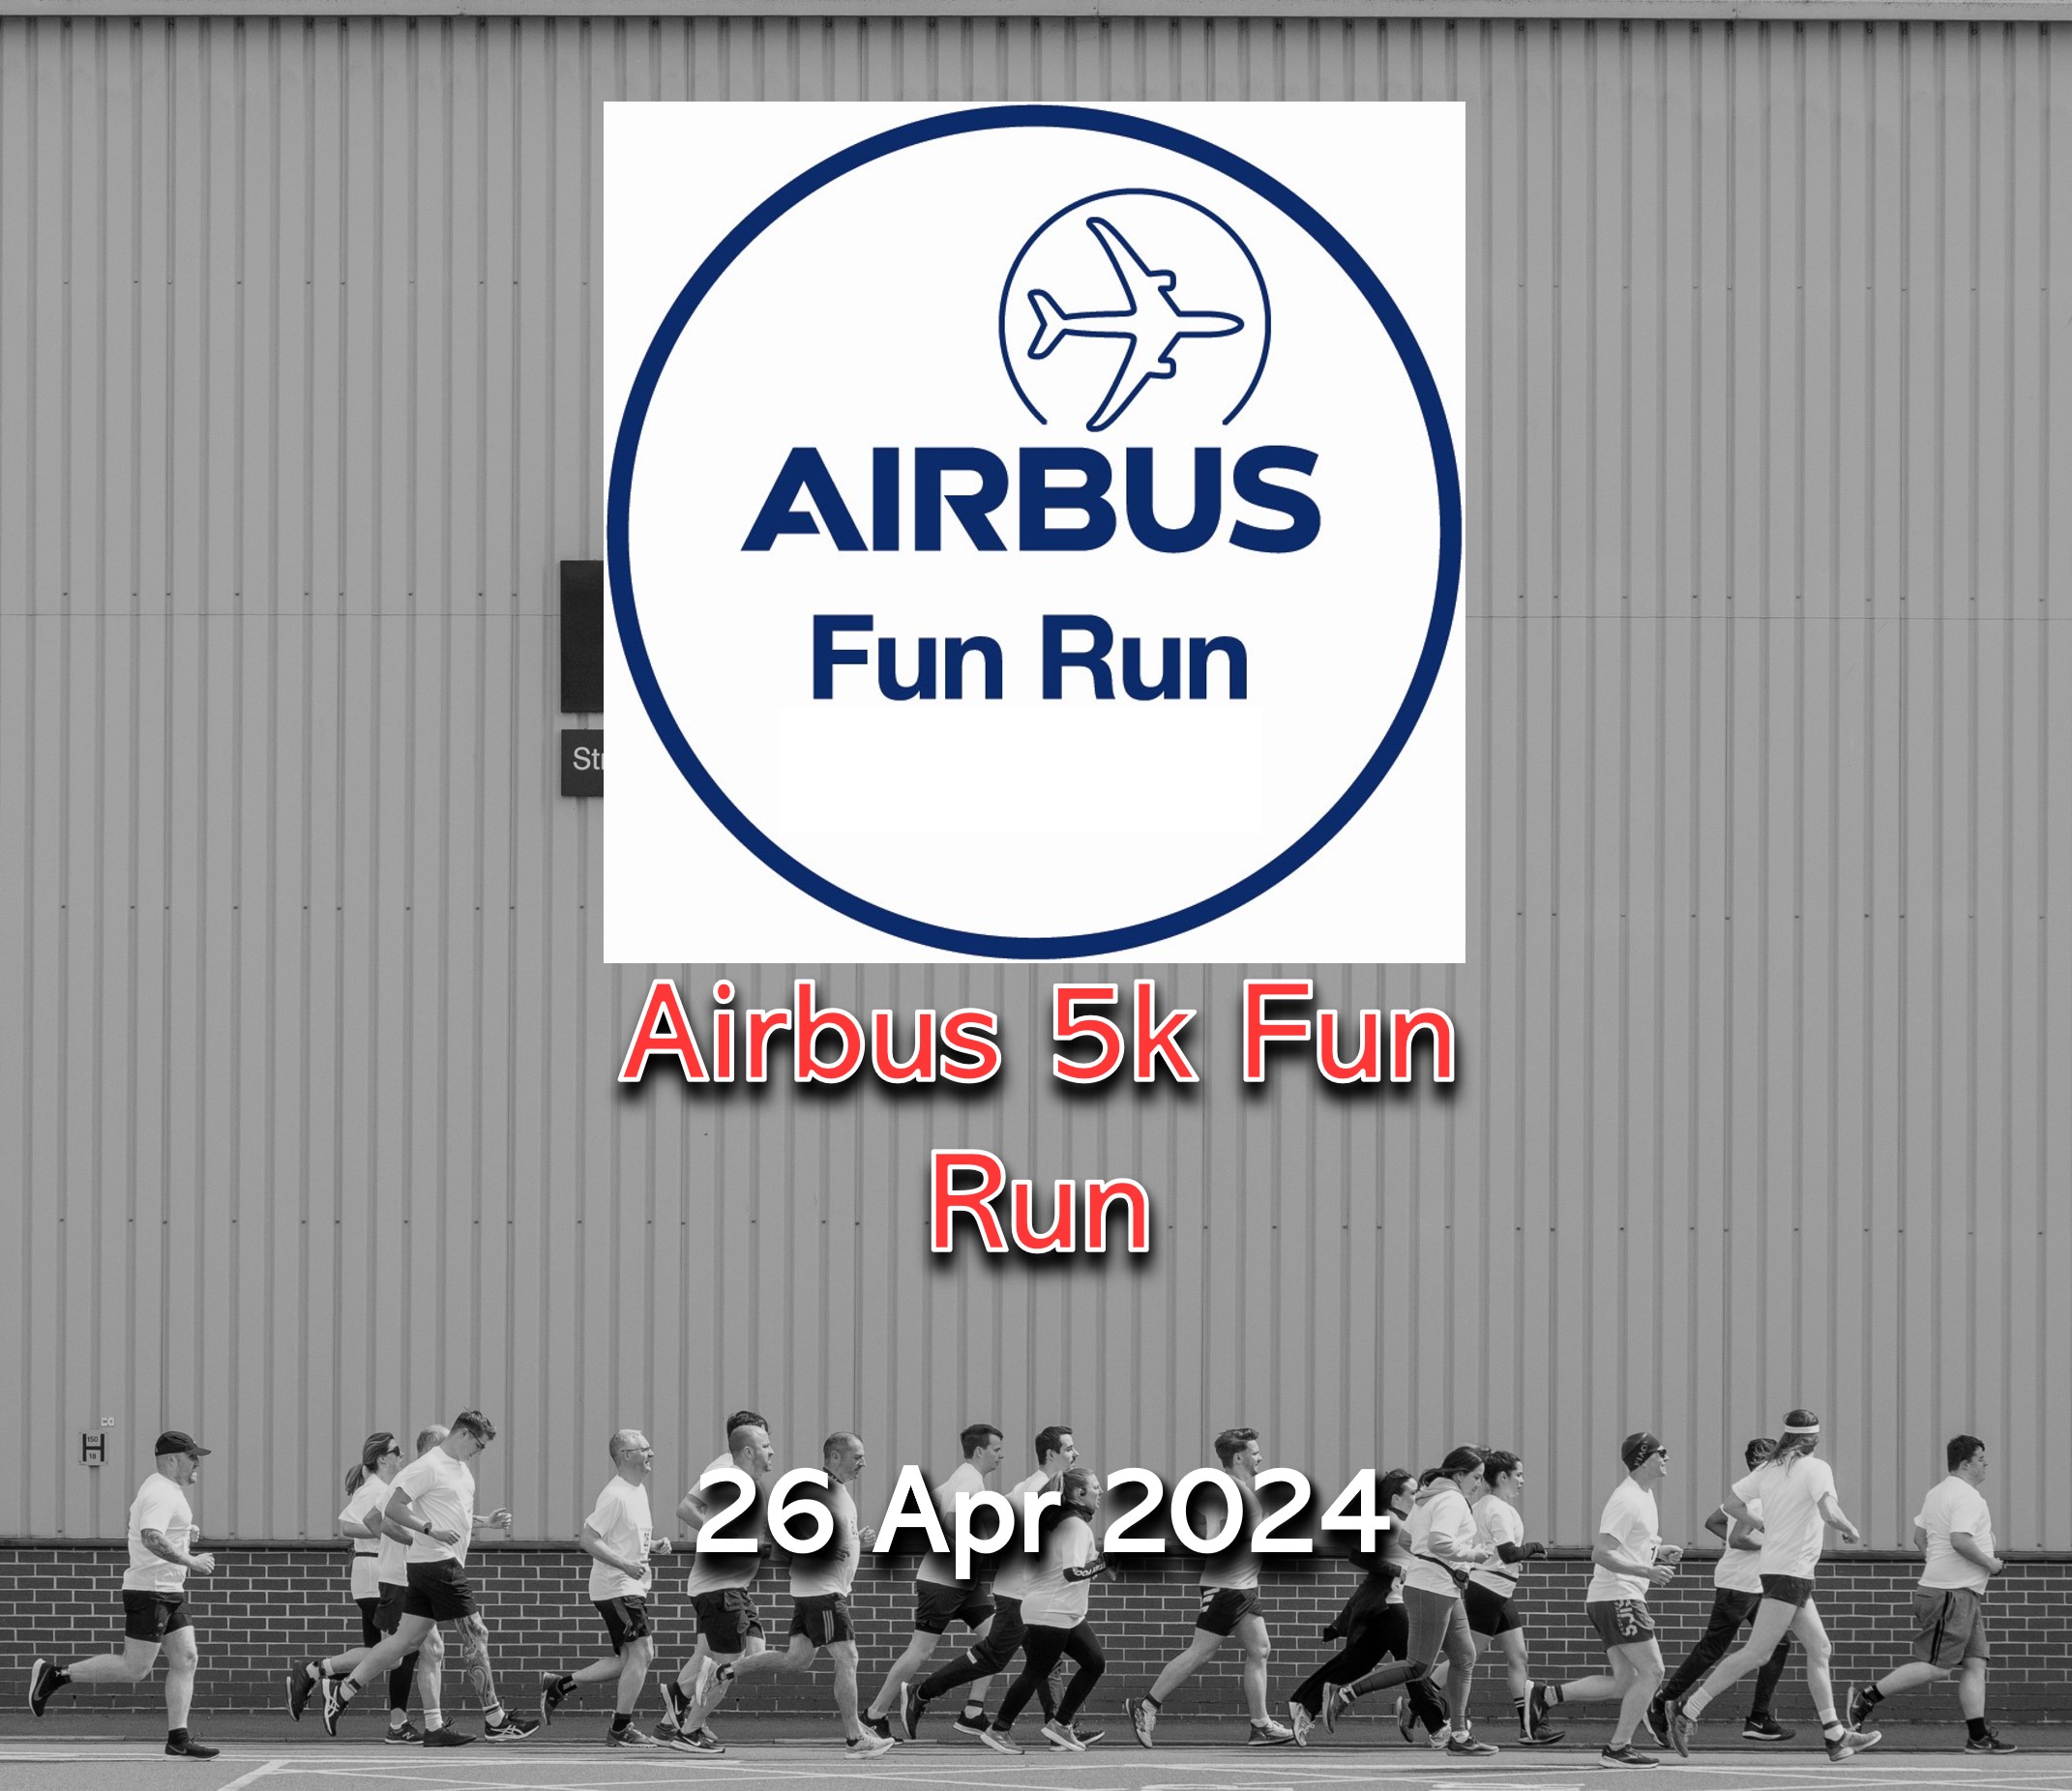 Airbus 5k Fun Run